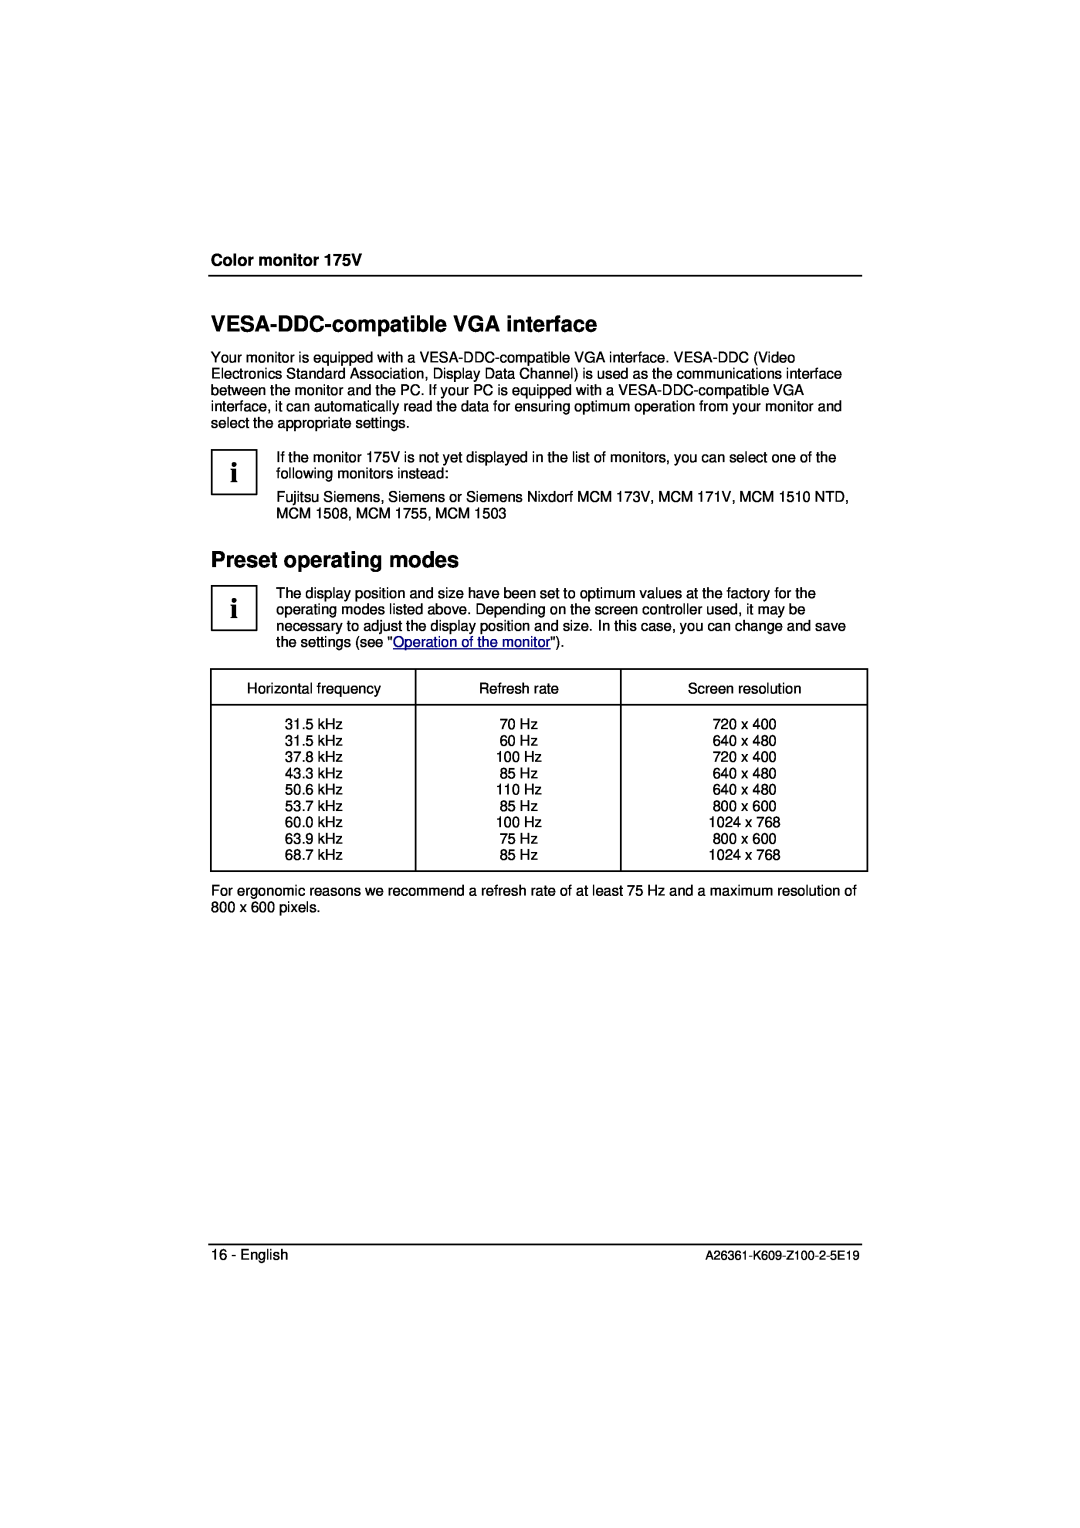 Siemens 175V manual VESA-DDC-compatible VGA interface, Preset operating modes, Color monitor 